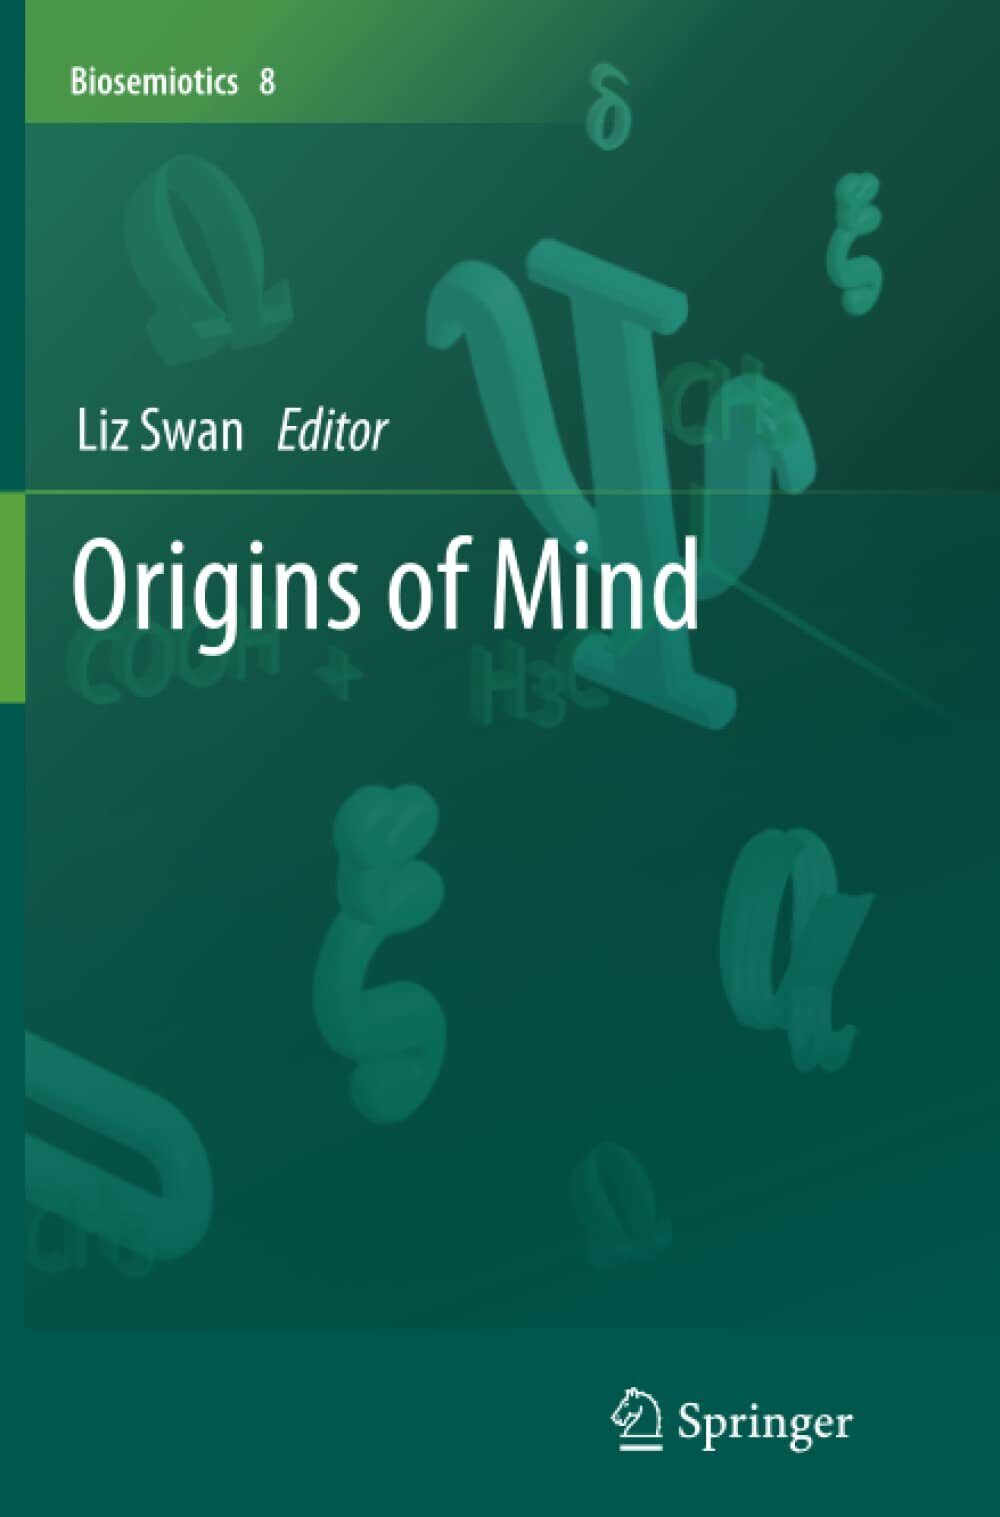 Origins of Mind - Liz Swan - Springer, 2015